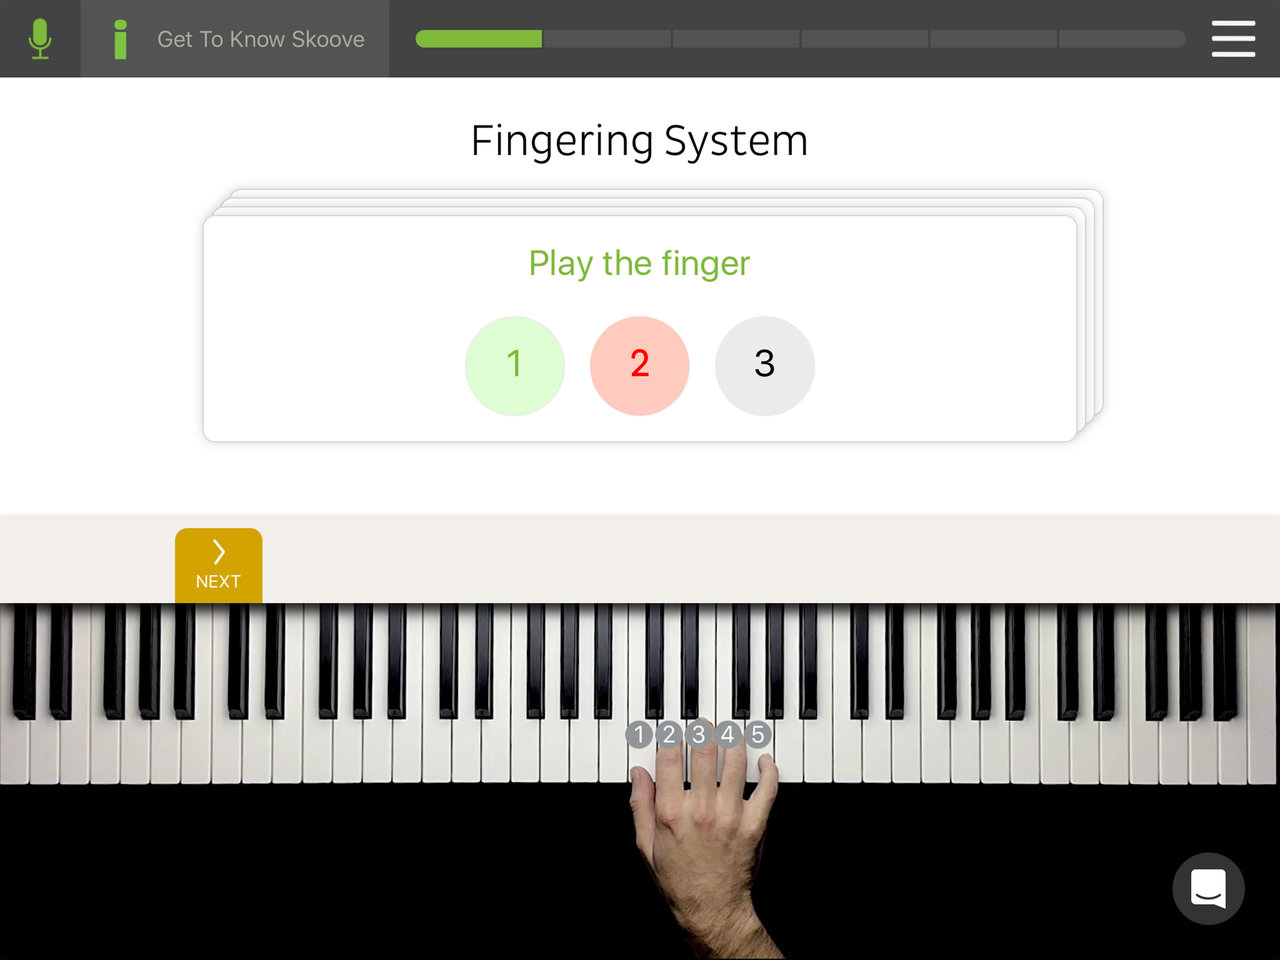 rsz_en_skoove_finger_system